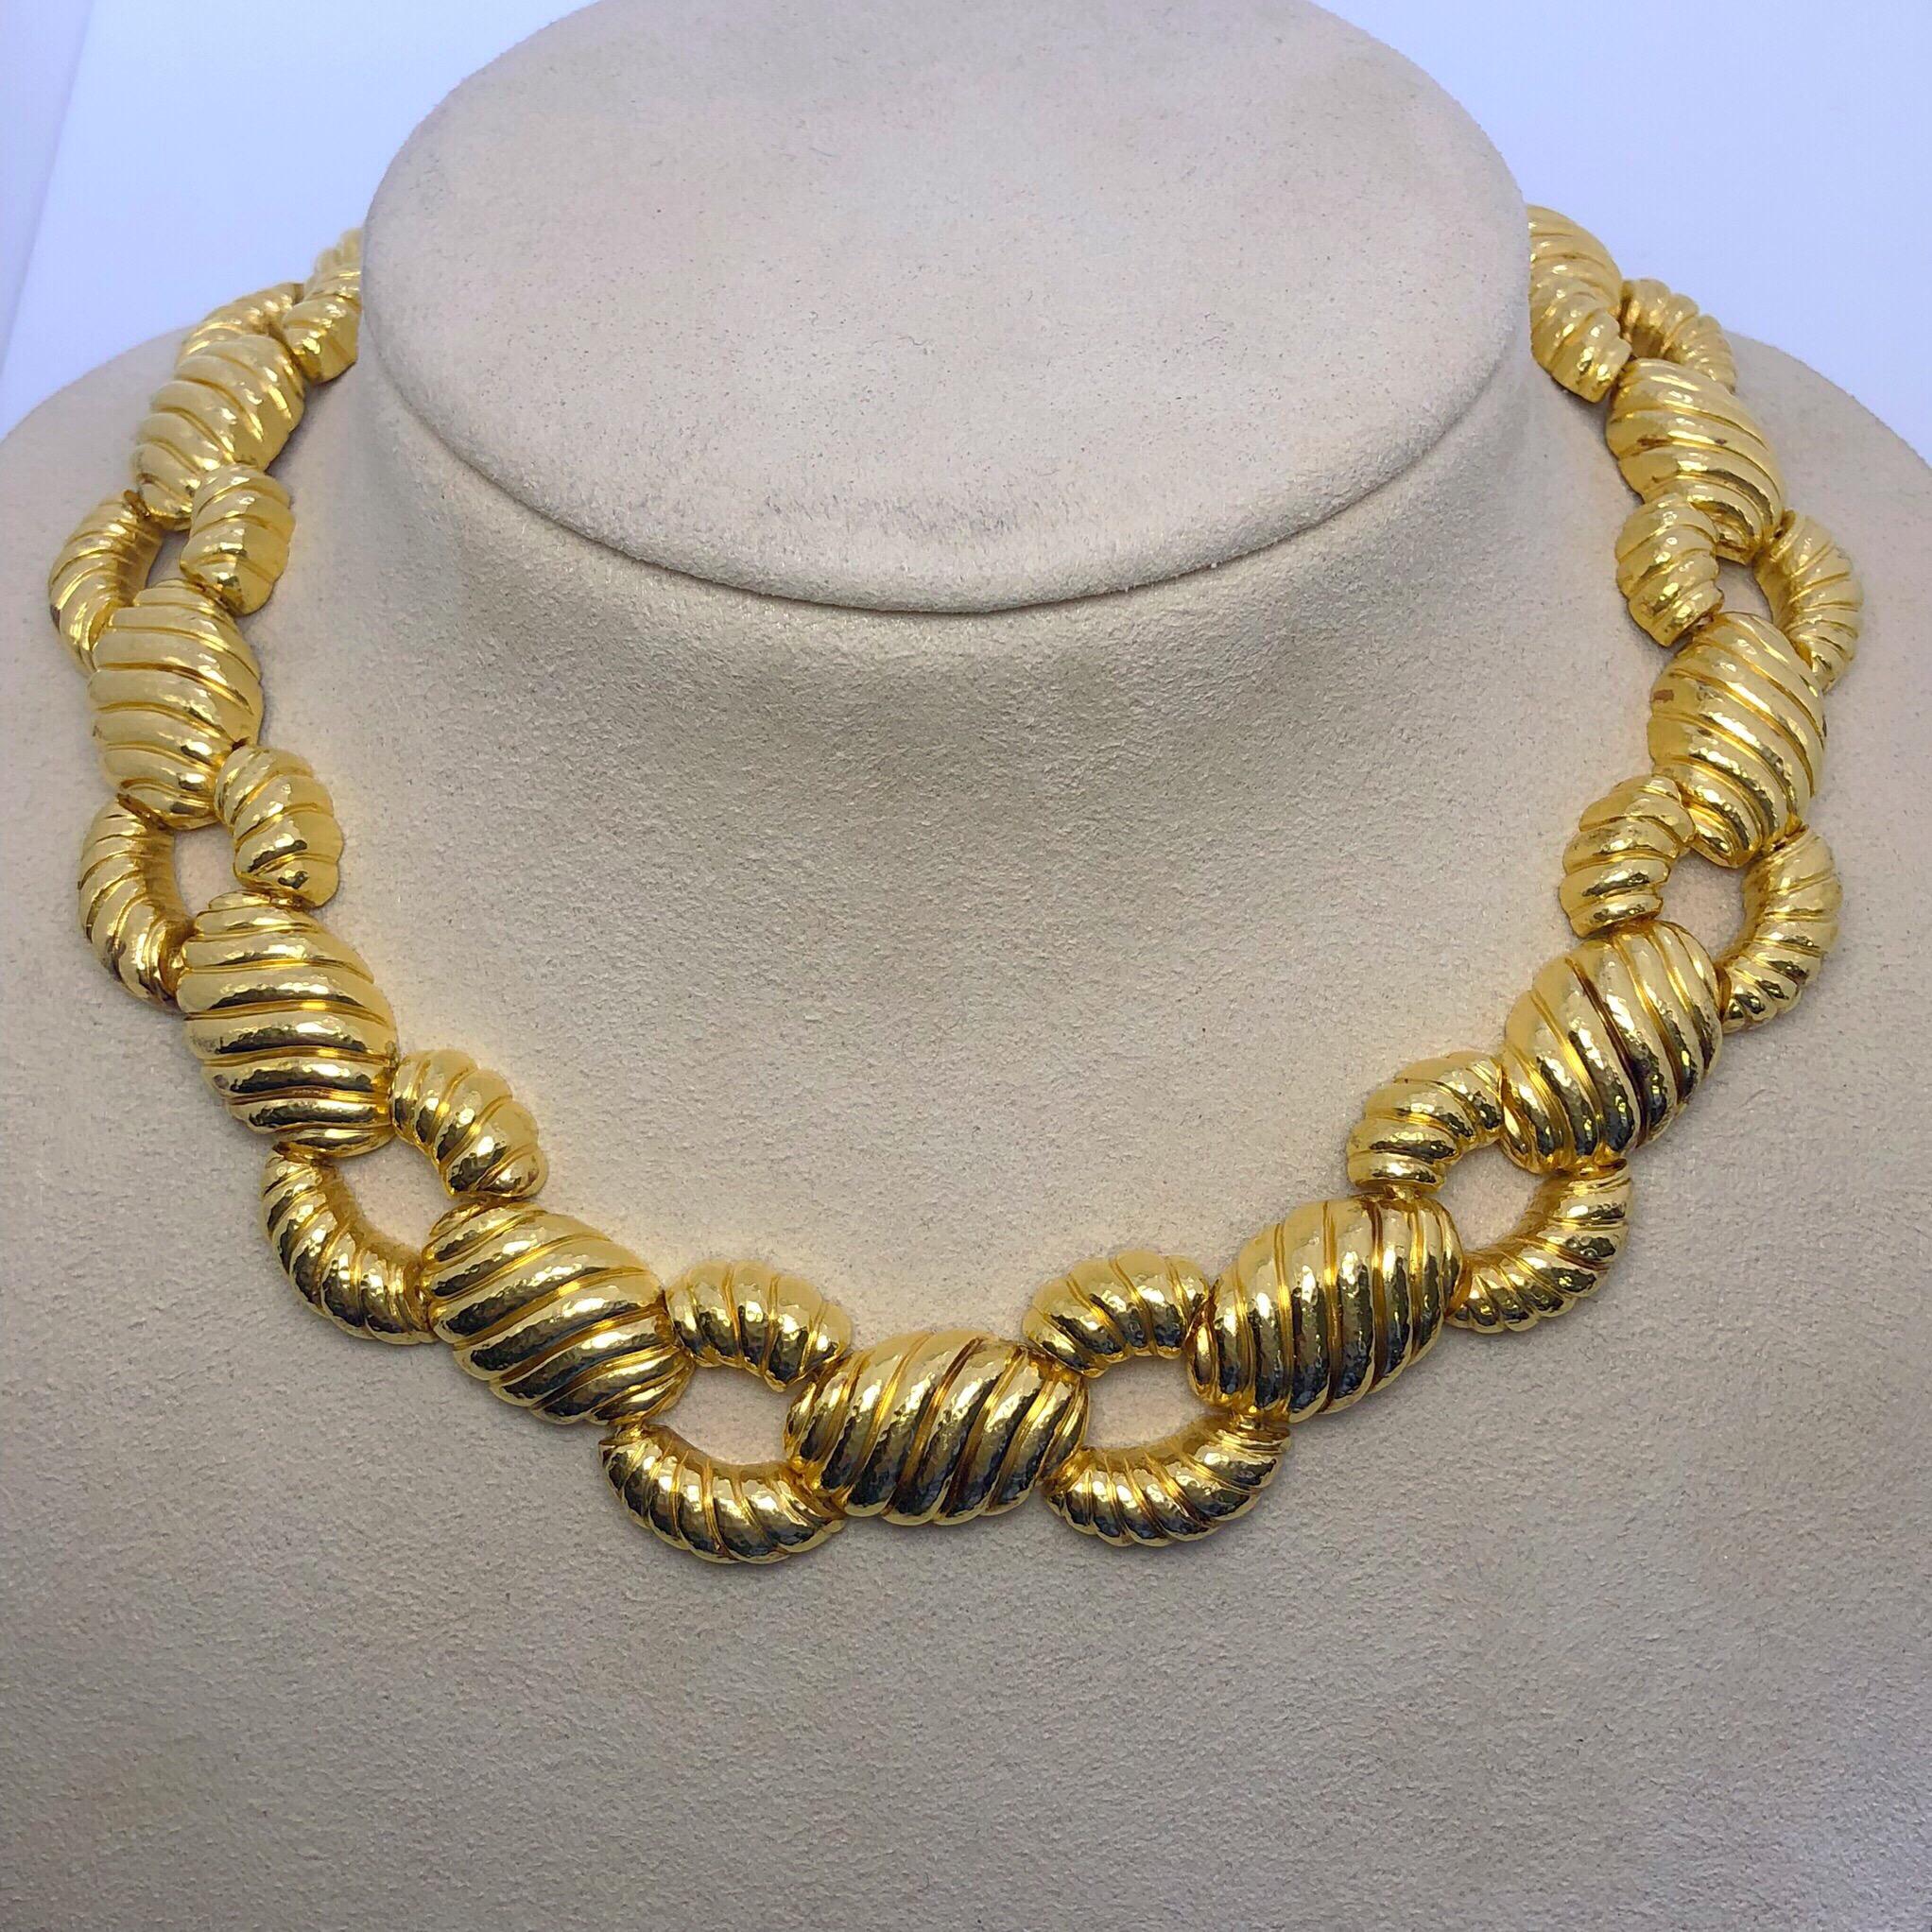 Ce magnifique collier est conçu par Zolotas d'Athènes, en Grèce. Fondée en 1895, la société fusionne l'héritage grec et le style moderne pour créer ces pièces intemporelles qui sont depuis lors convoitées par les rois et les actrices.
Composé d'or